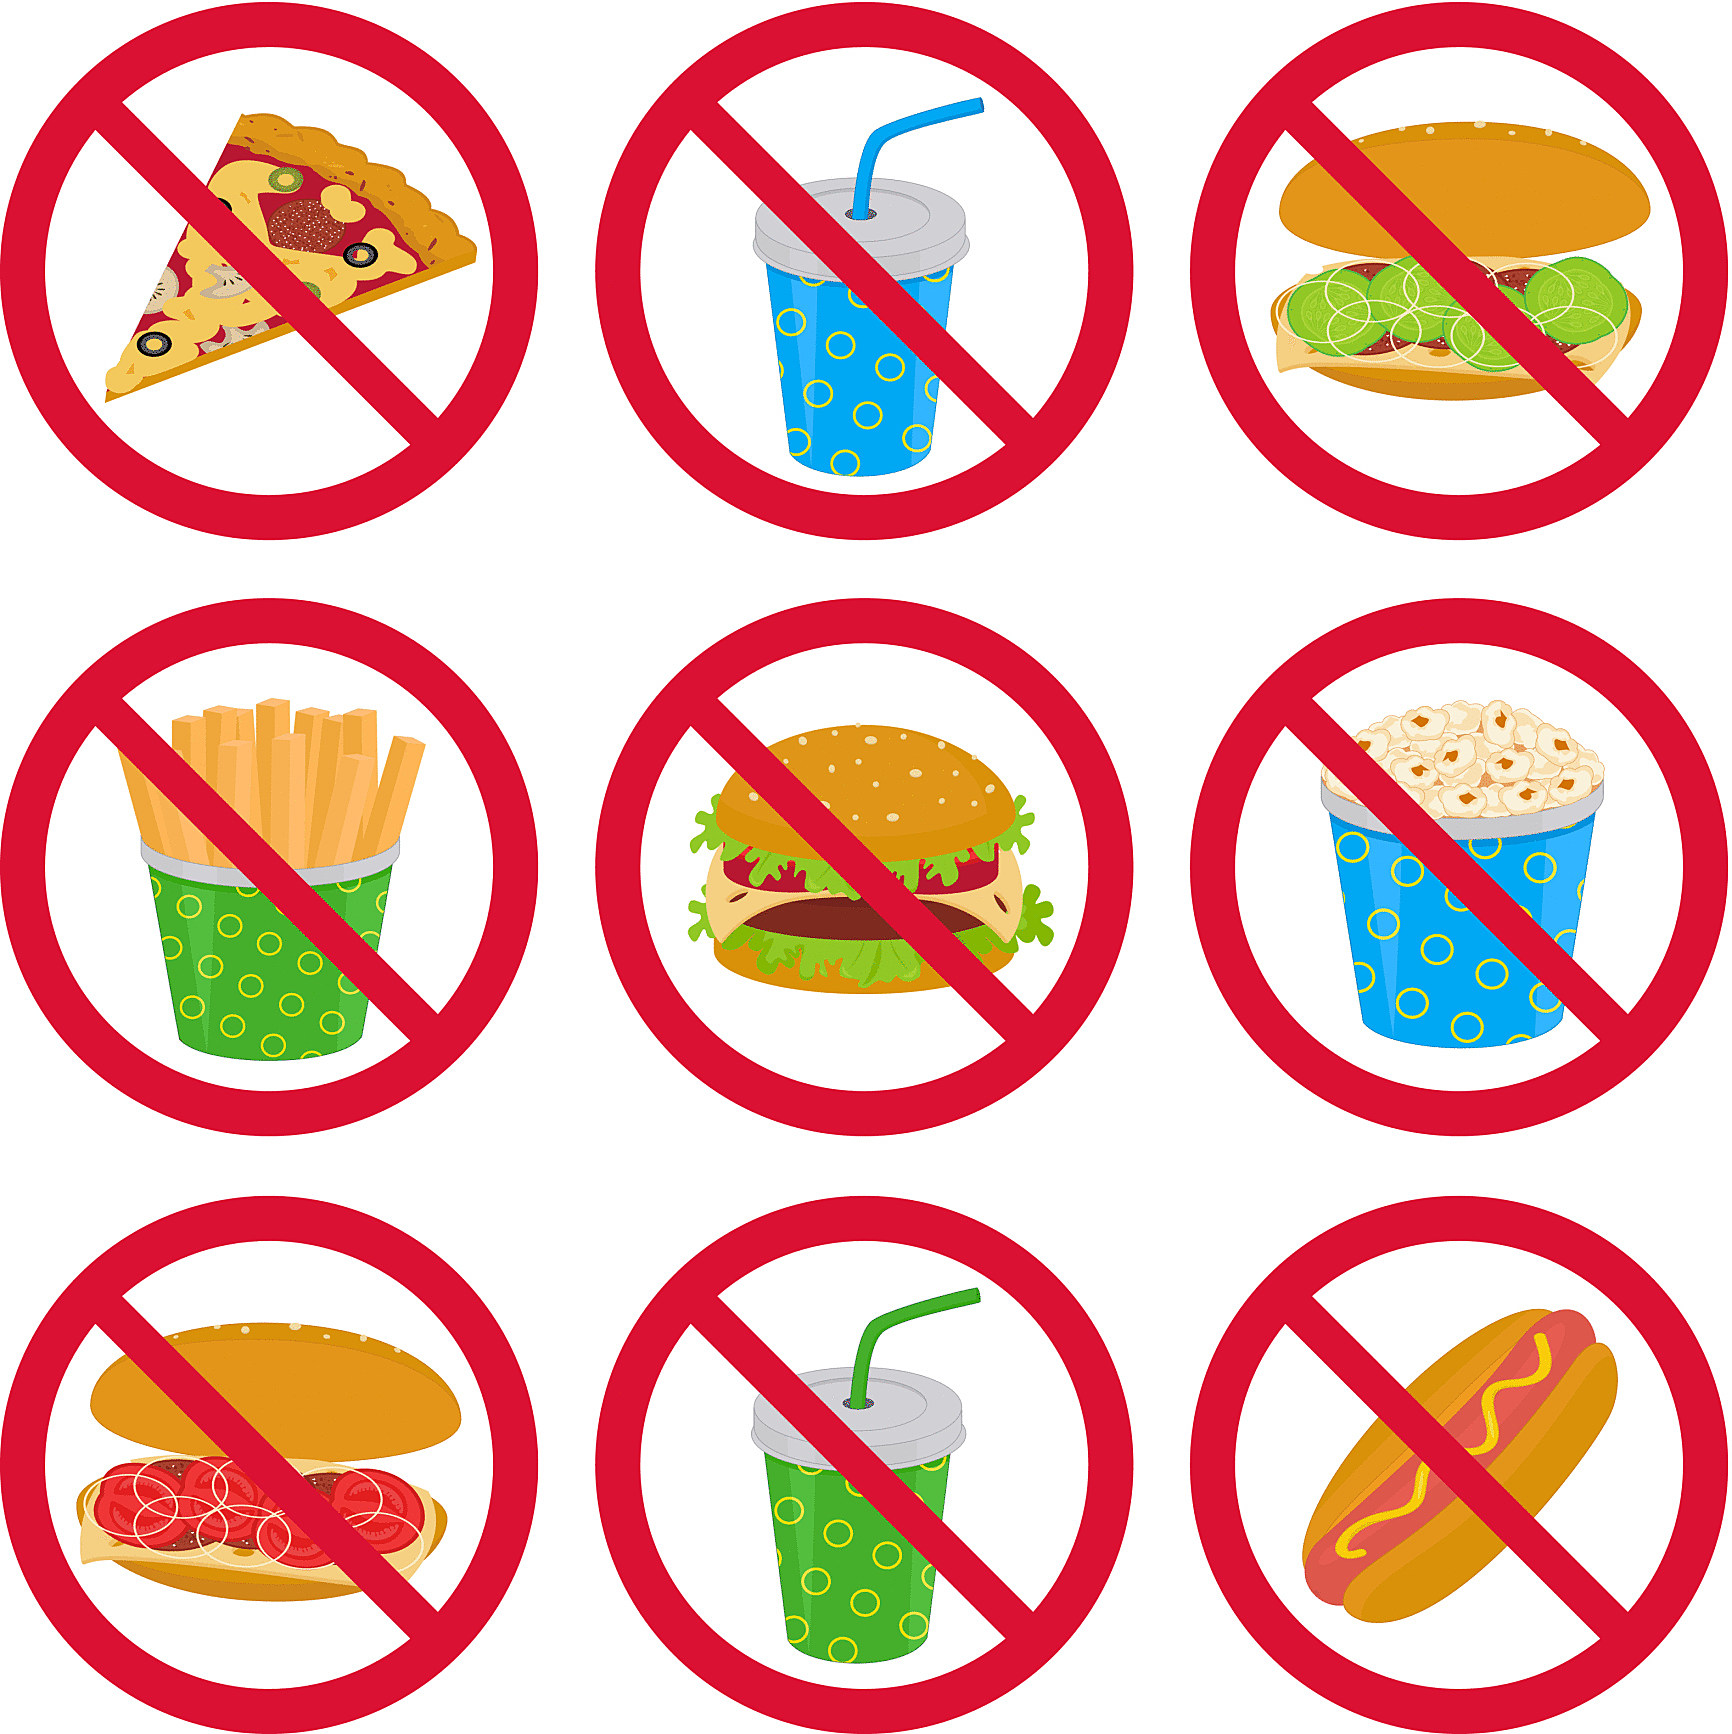 19 апреля что можно и нельзя. Запрет на вредную пищу. Знаки здорового образа жизни. Знак запрета вредной еды. Рисунок вредные привычки в еде.